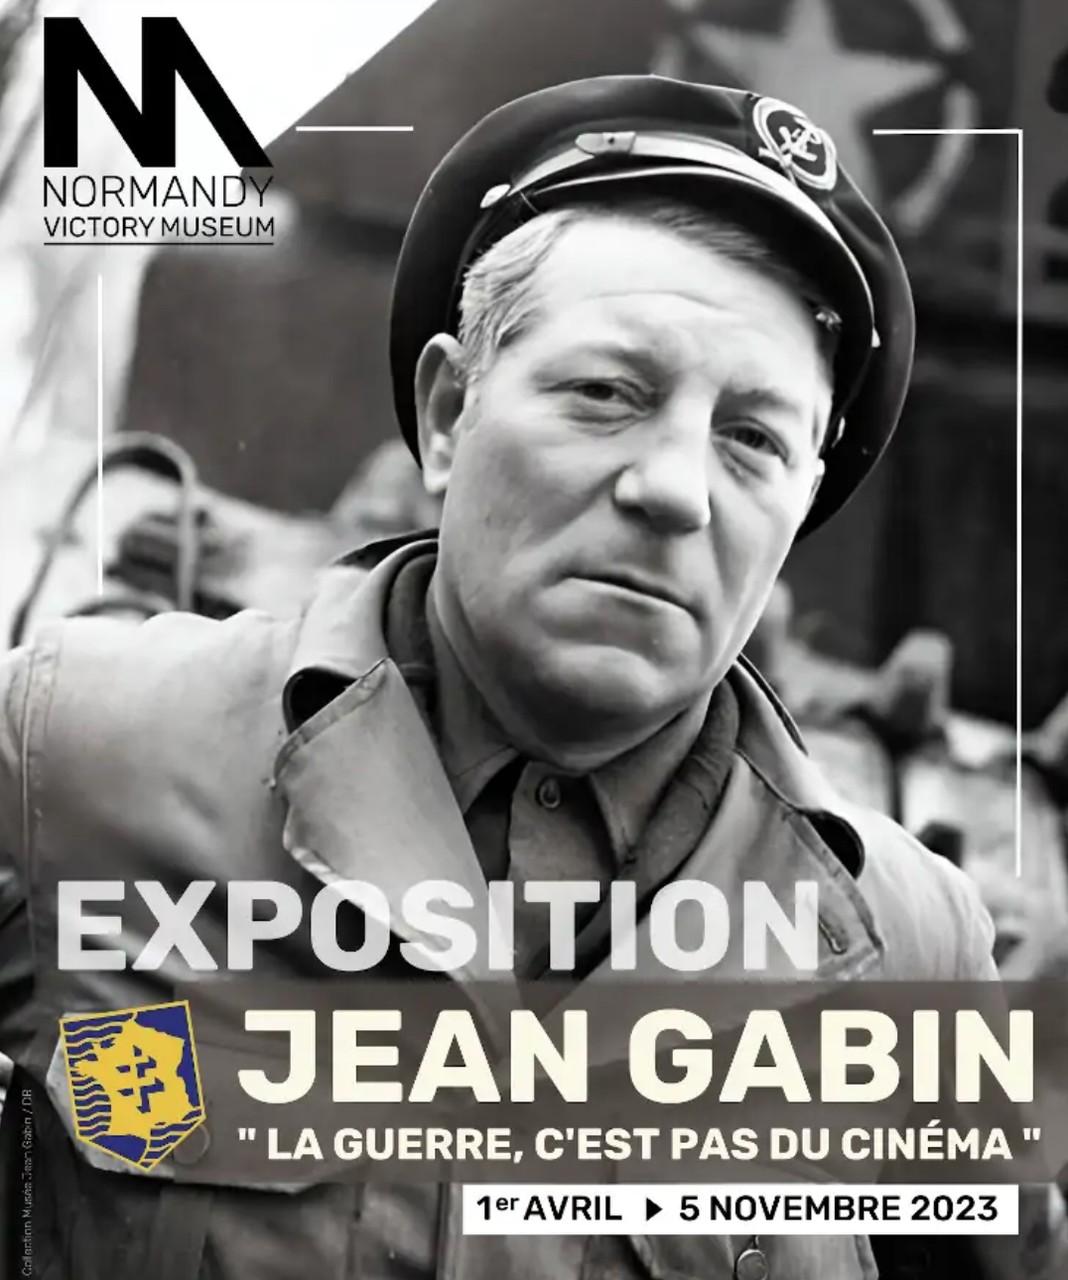 Exhibition: “Jean Gabin, la guerre c’est pas du cinéma"